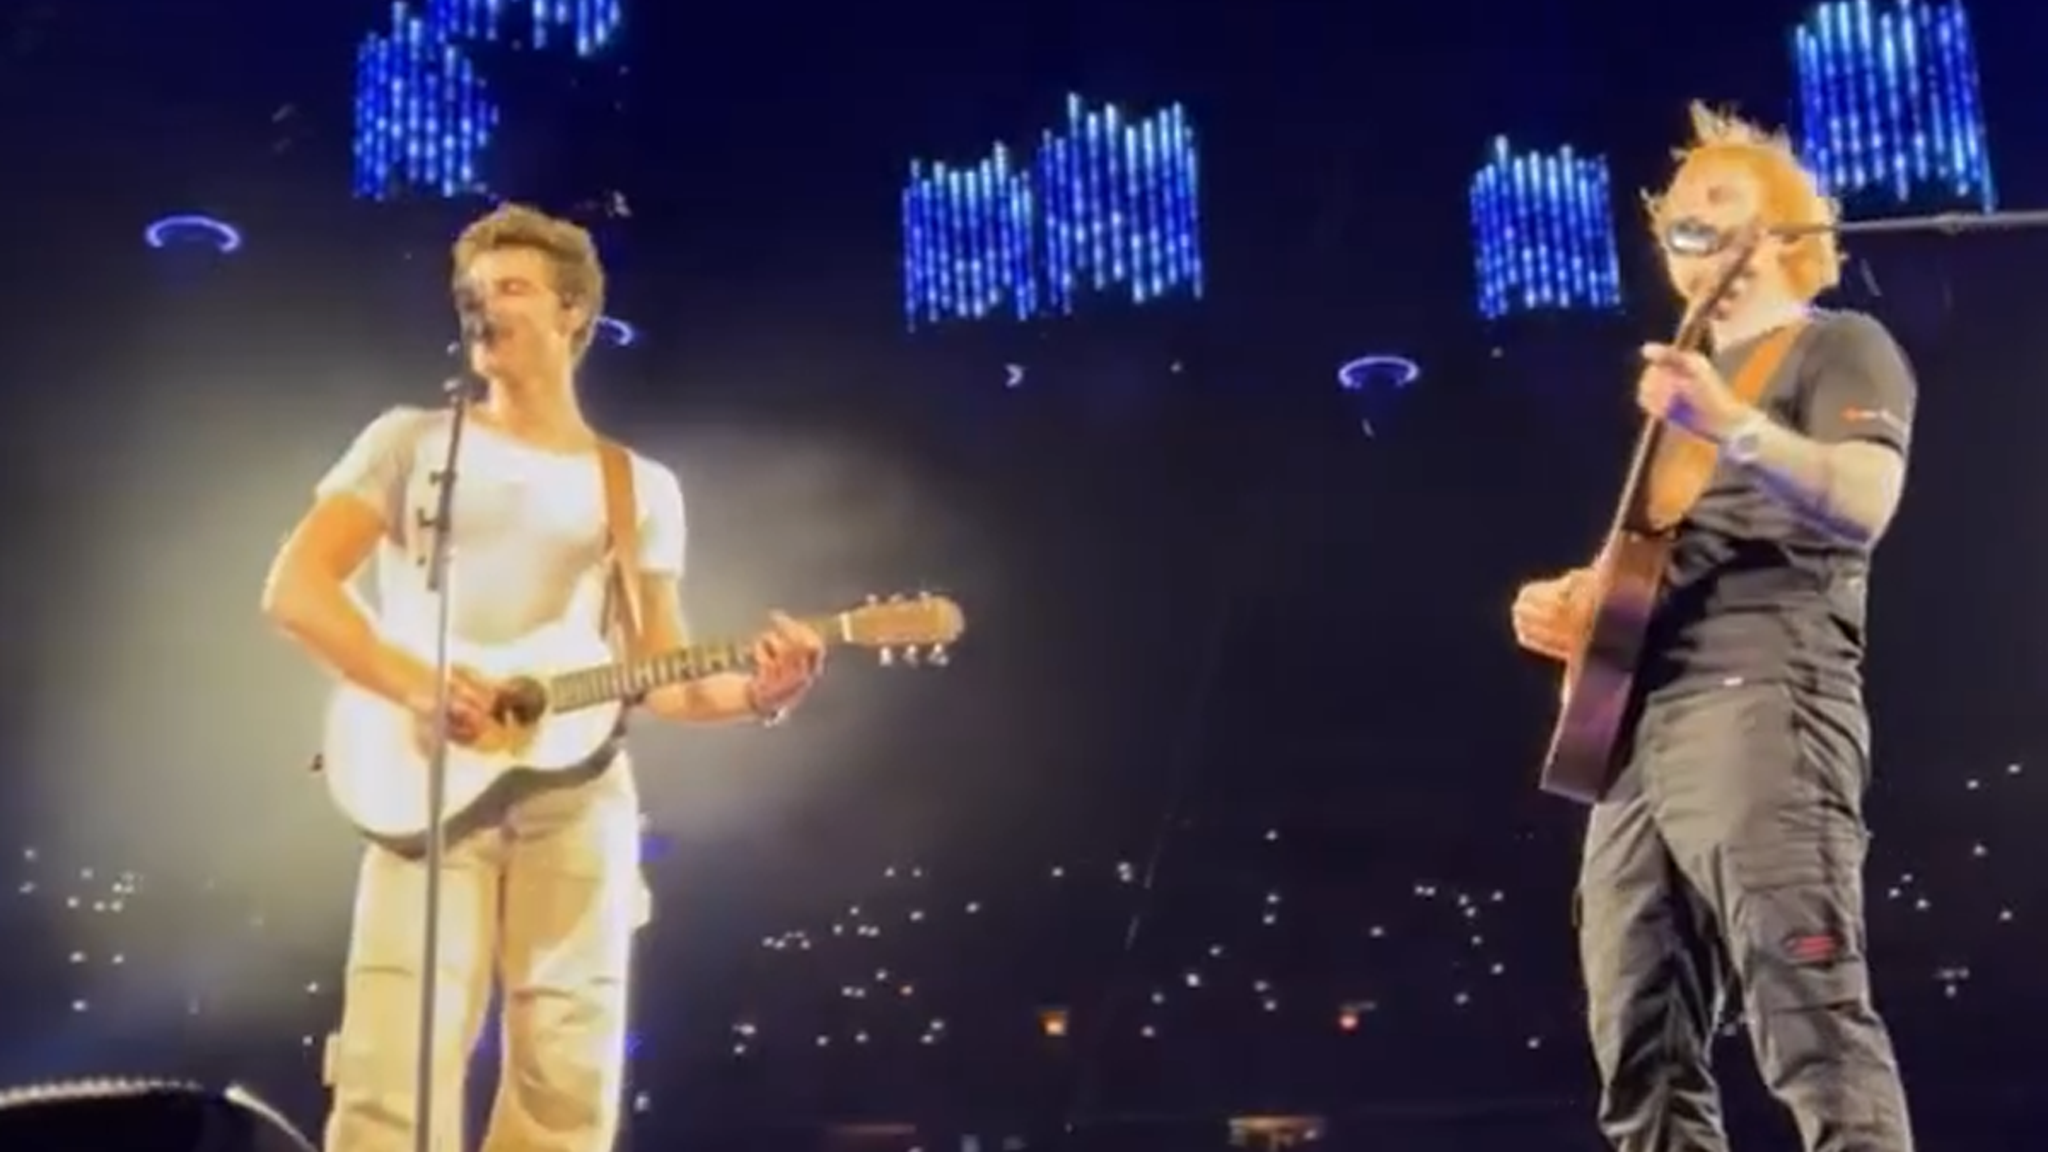 ينضم Shawn Mendes إلى Ed Sheeran على المسرح ، وهو أول حفل موسيقي مباشر منذ توقف الجولة